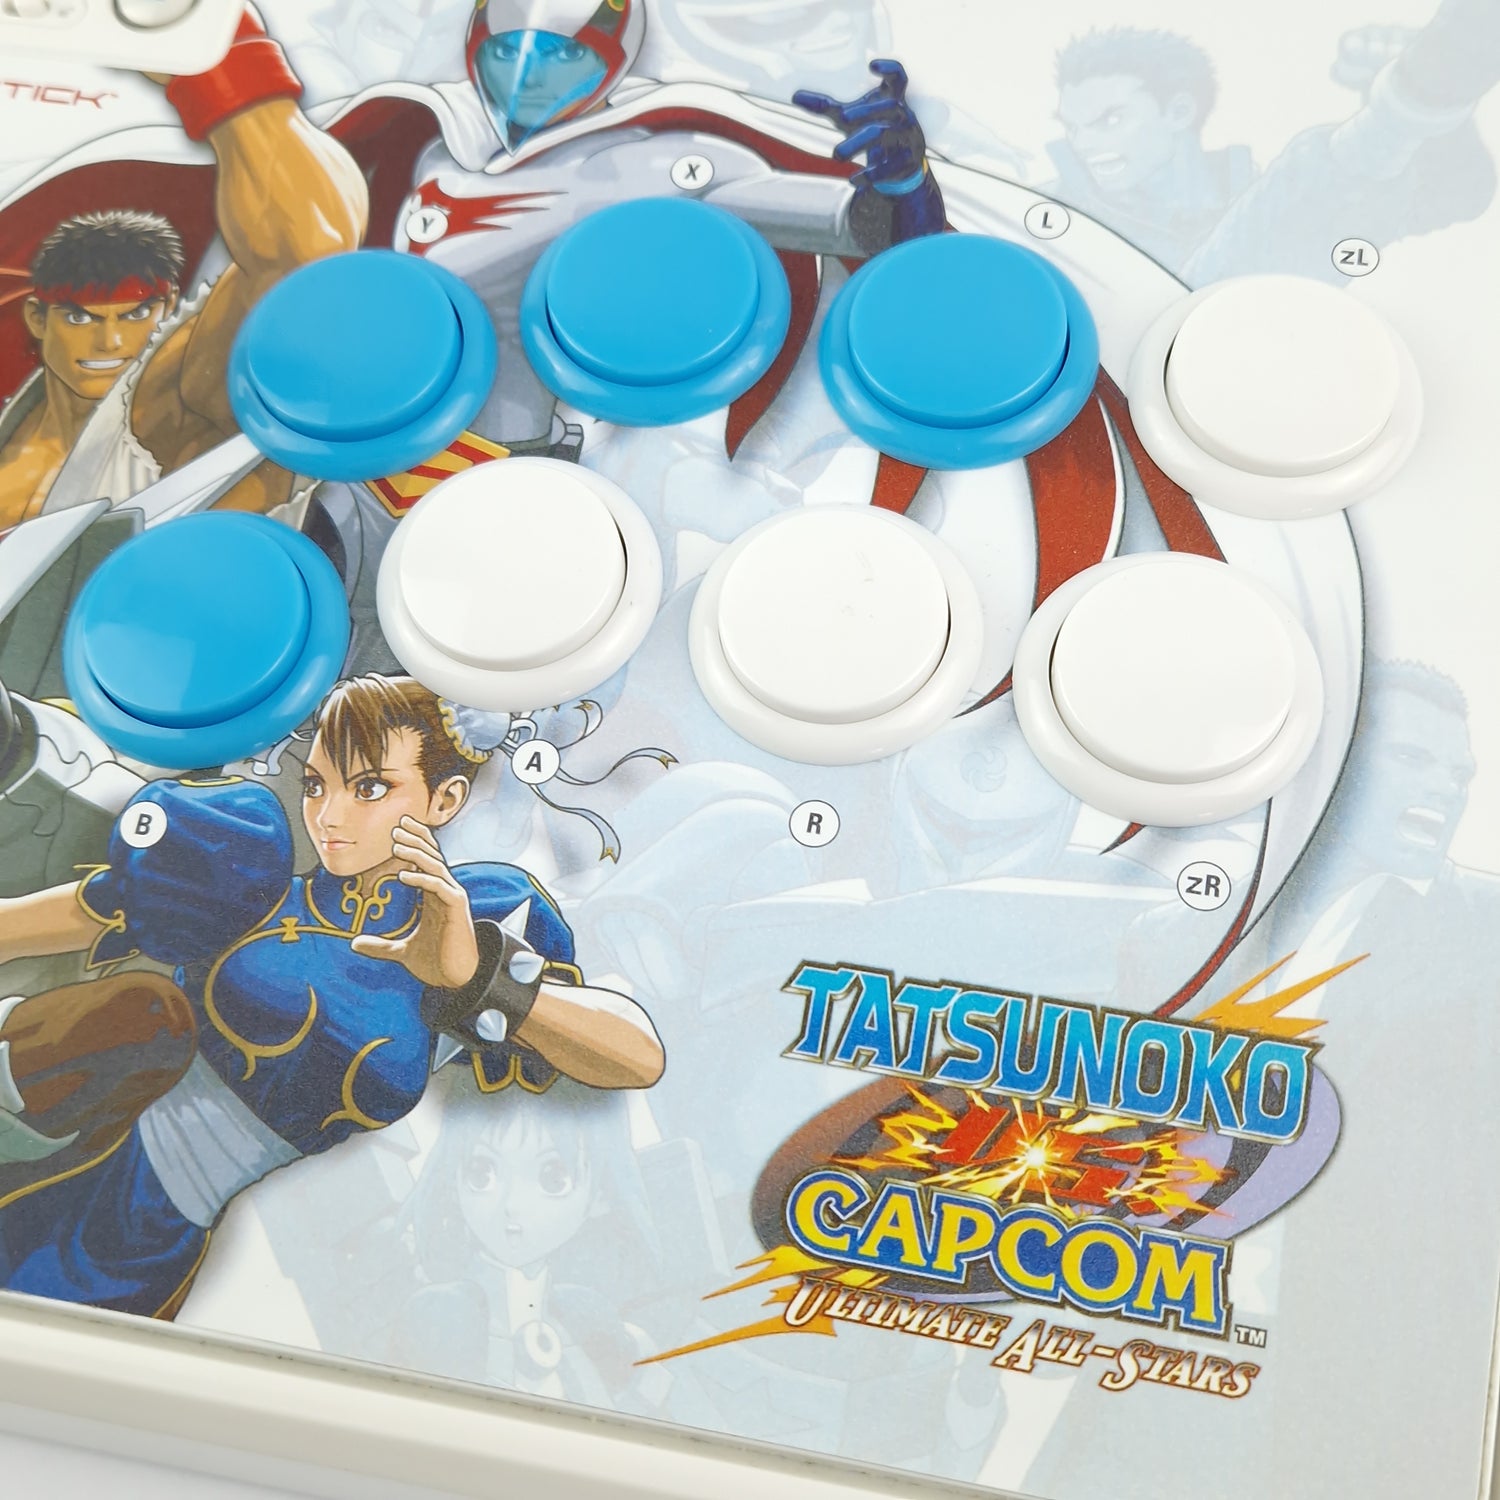 Nintendo Wii: Tatsunoko VS Capcom Ultimate All-Stars Arcade Fightstick - OVP